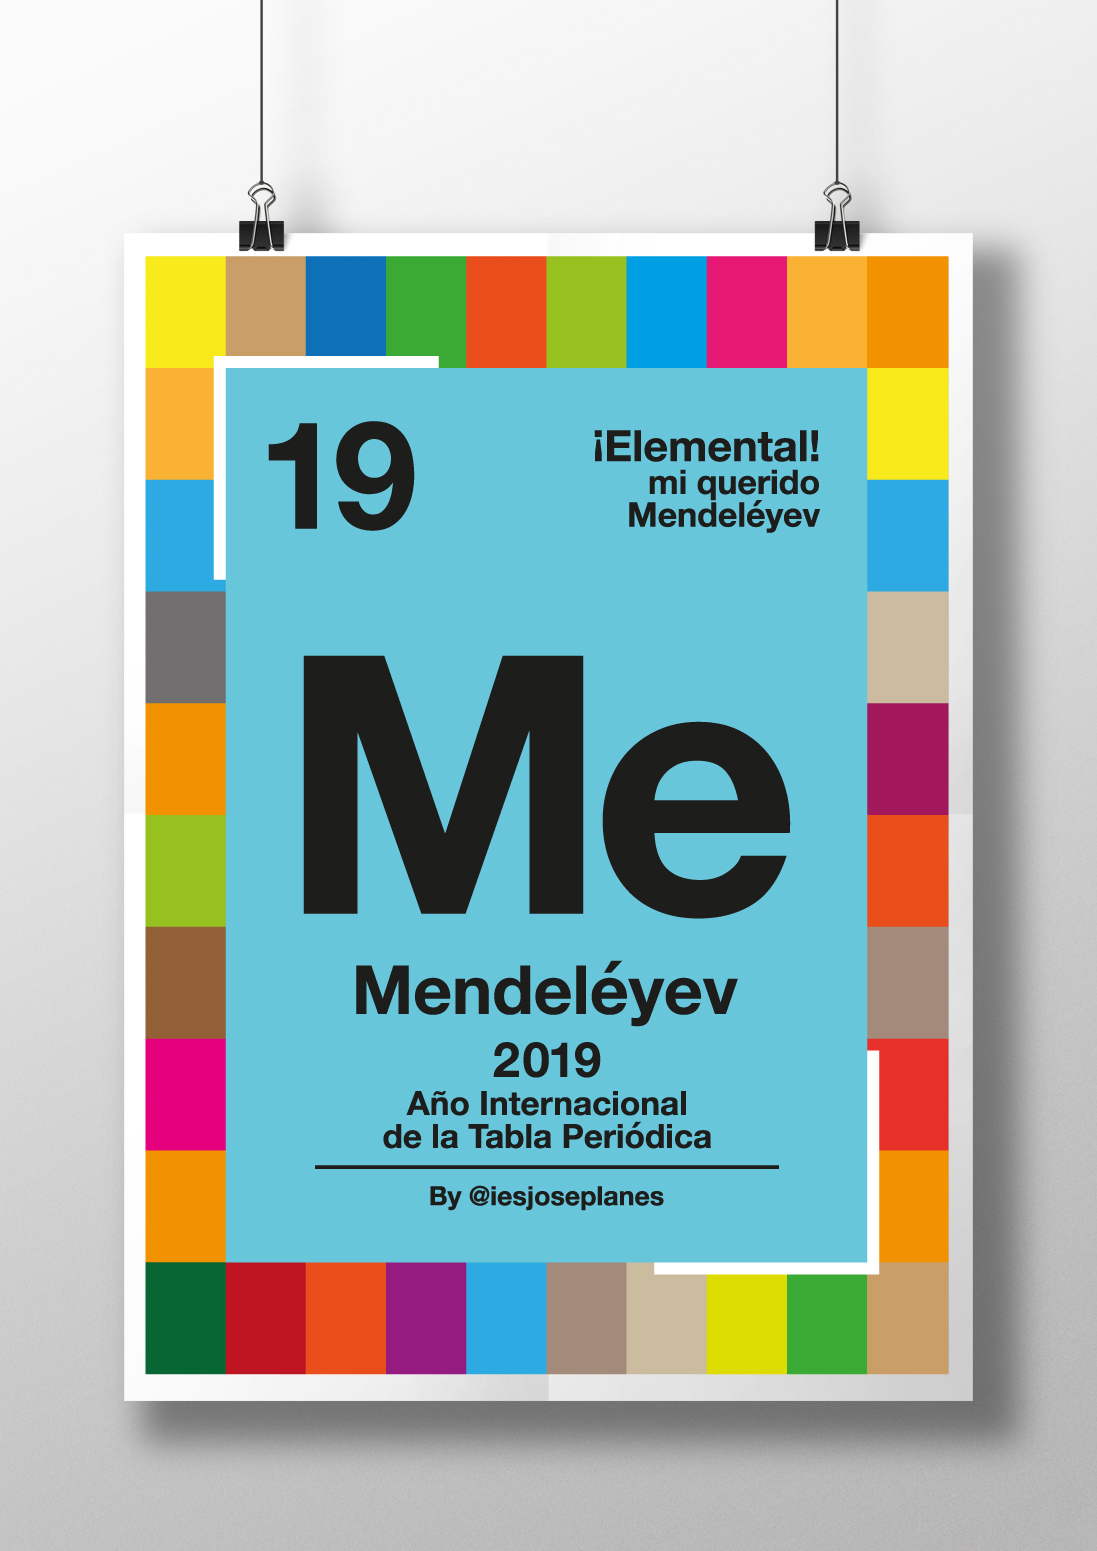 ¡Elemental, mi querido Mendeléyev!